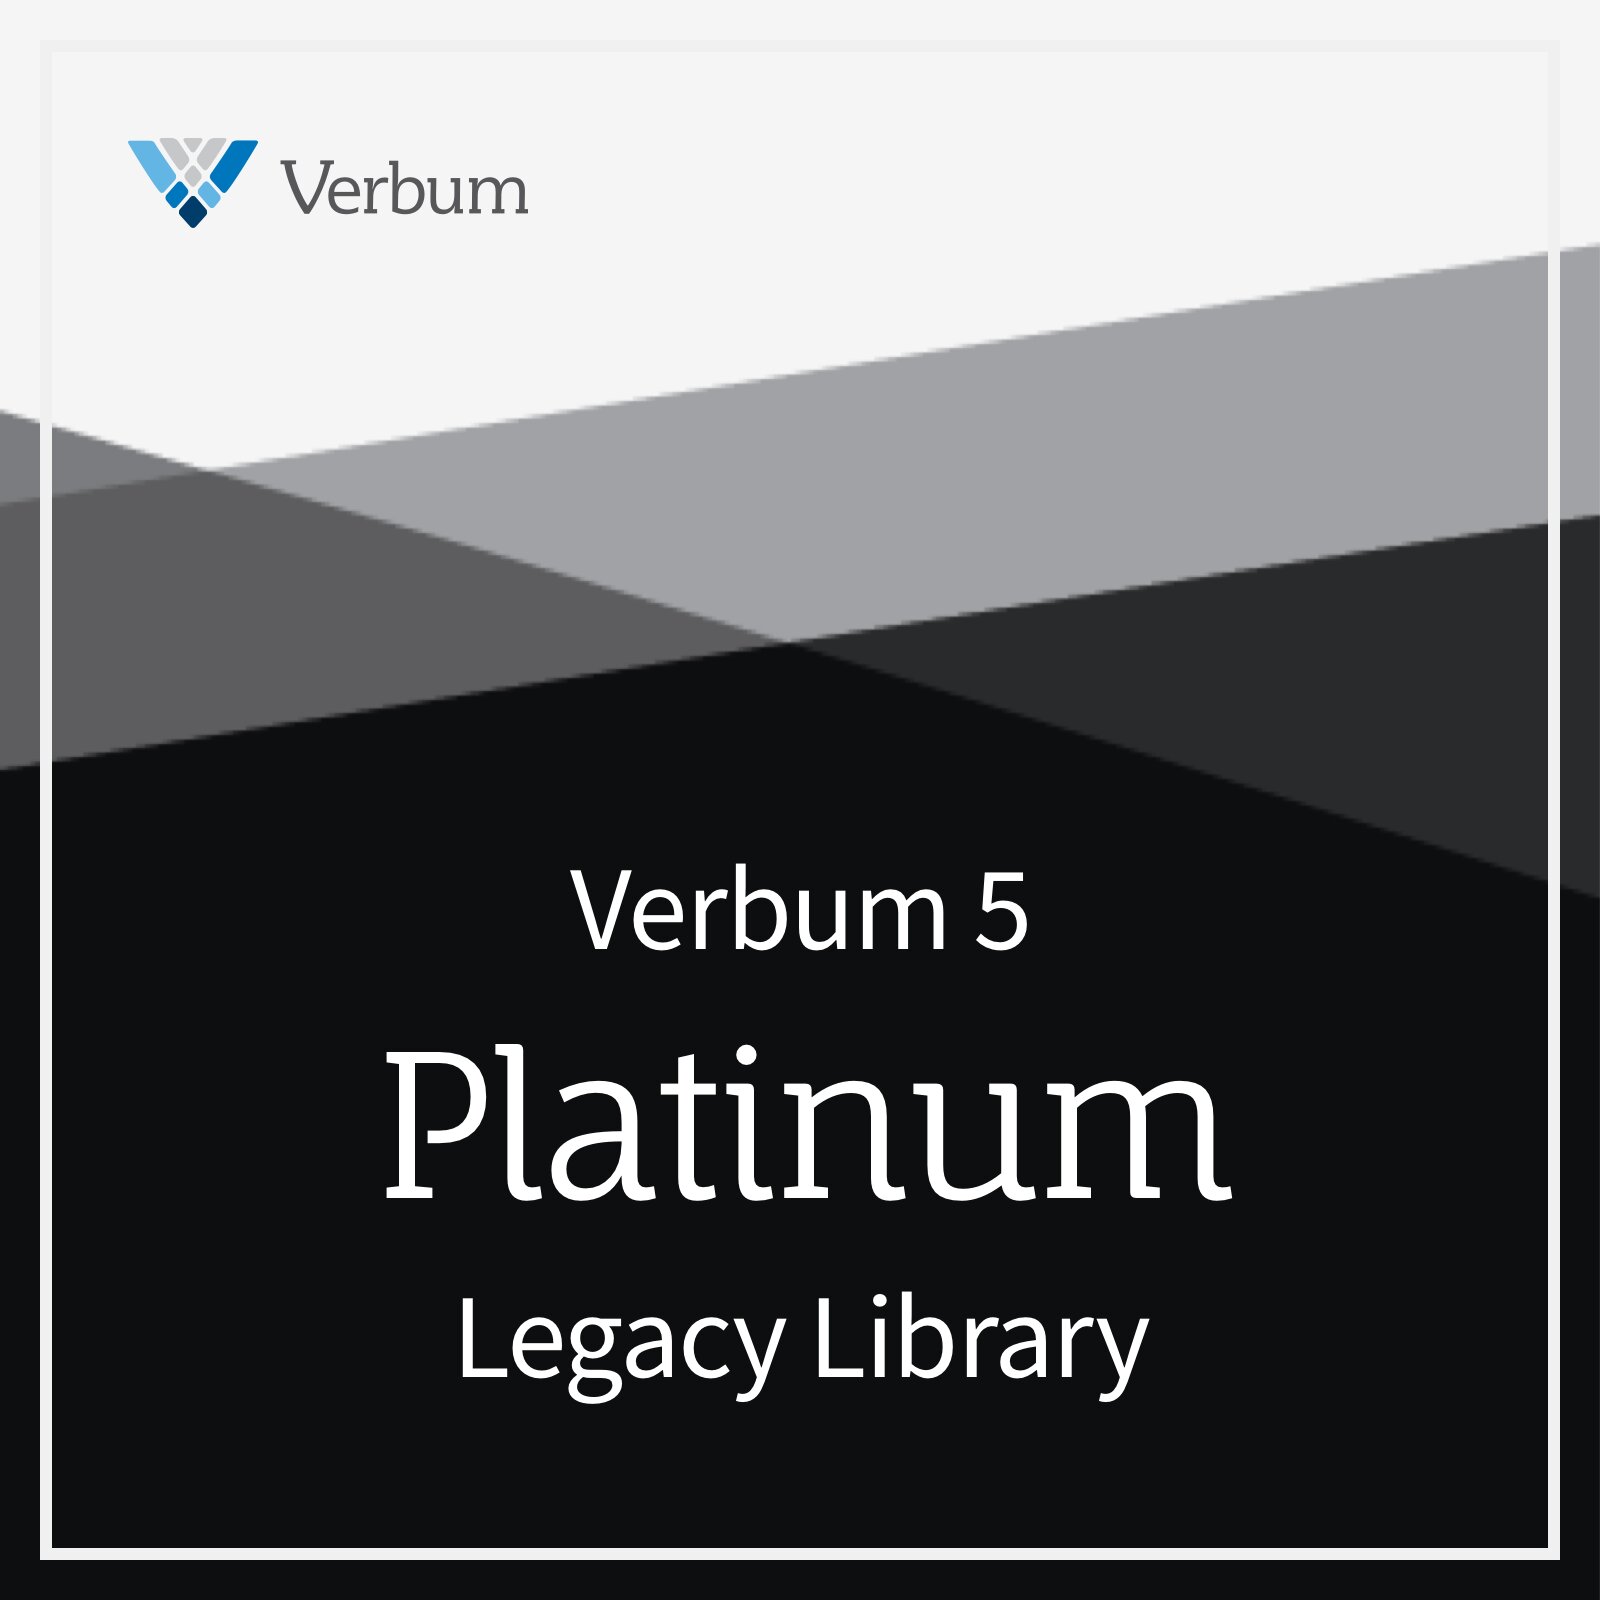 Verbum 5 Platinum Legacy Library